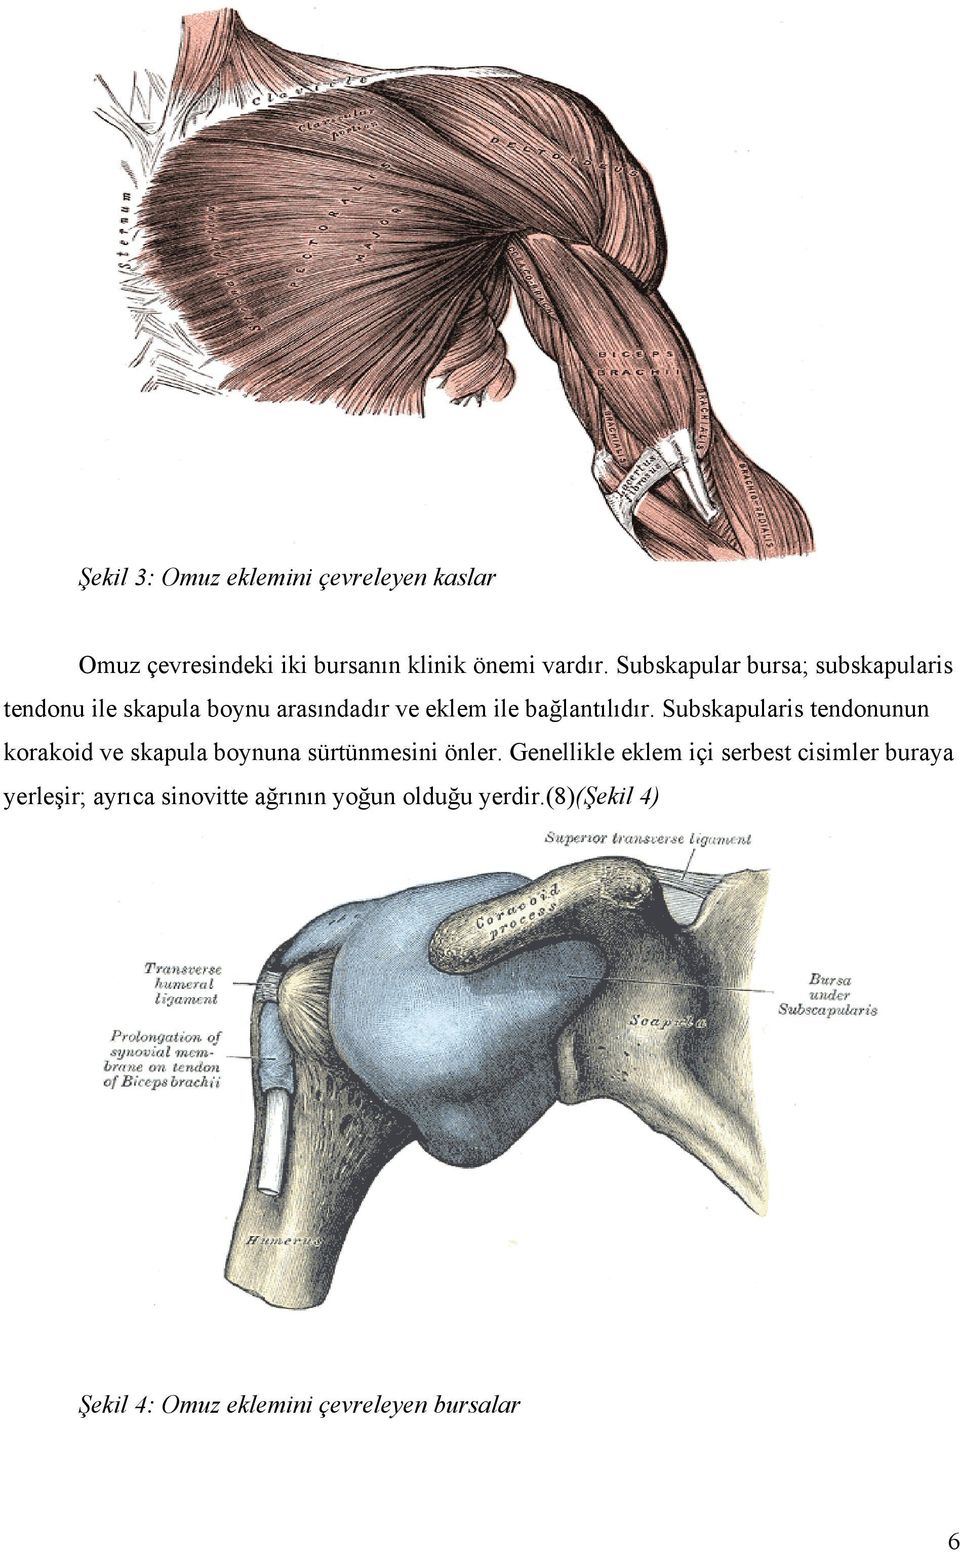 Subskapularis tendonunun korakoid ve skapula boynuna sürtünmesini önler.